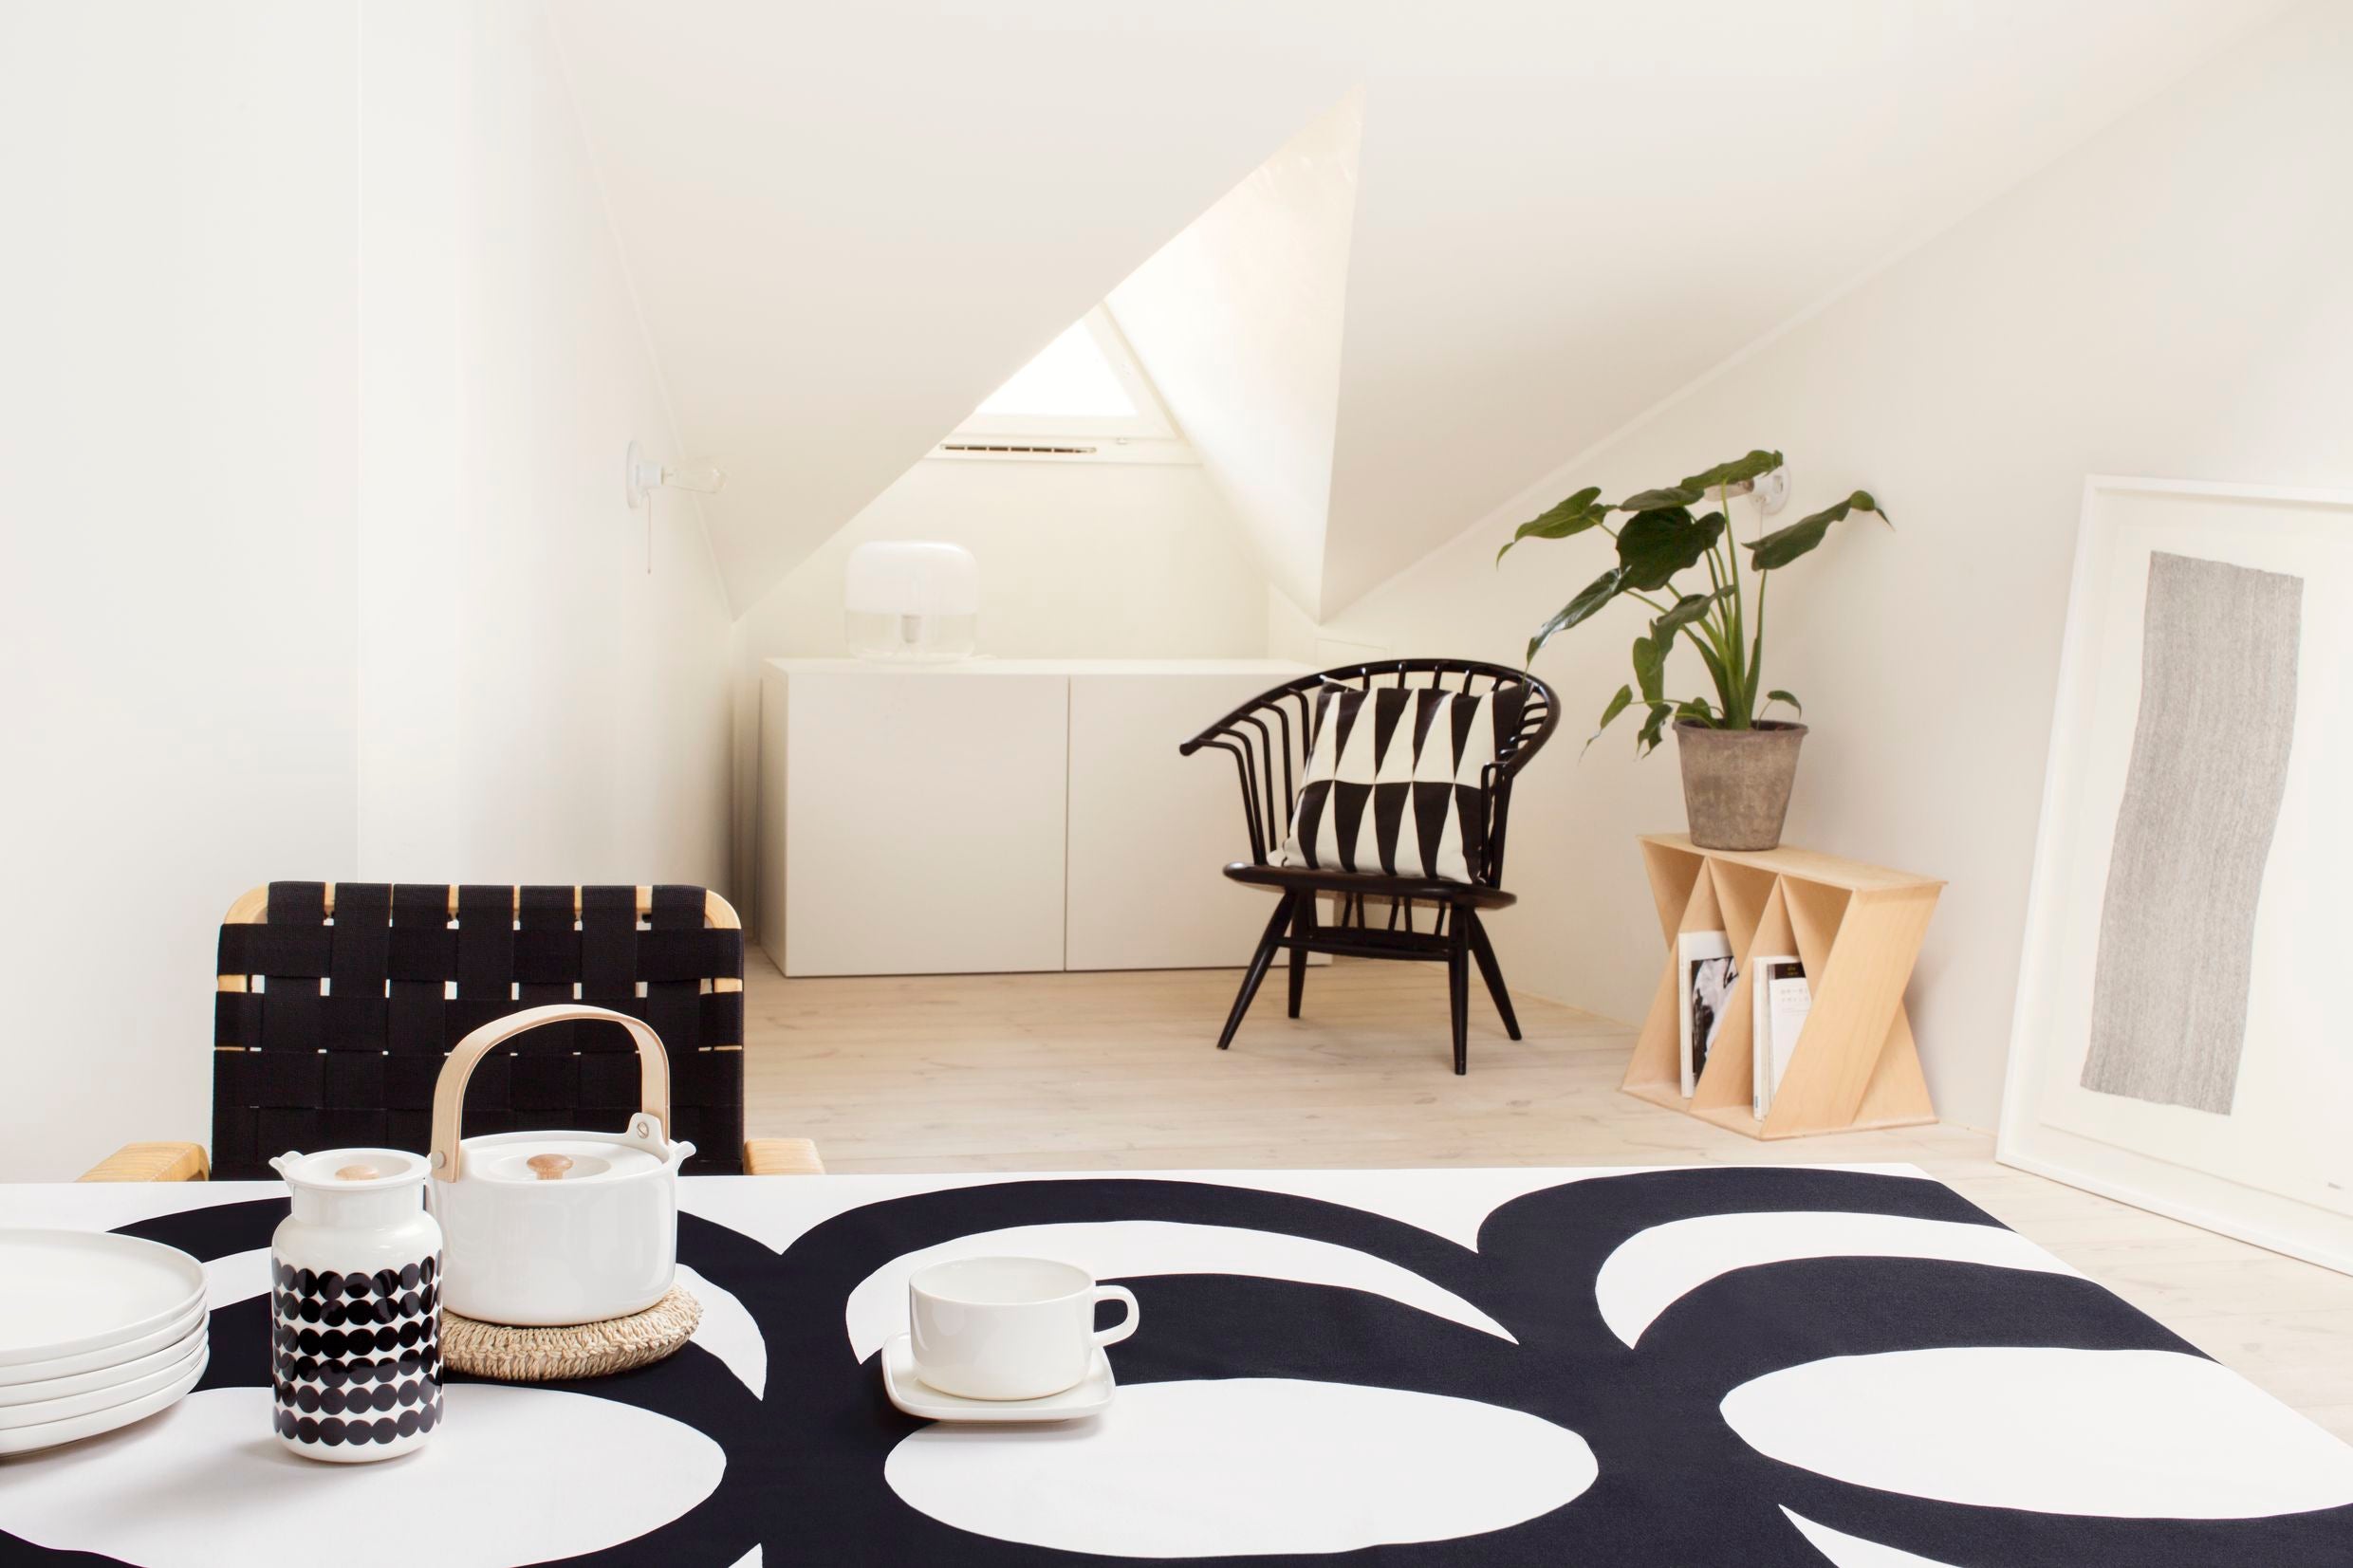 Marimekko textiles and home decor